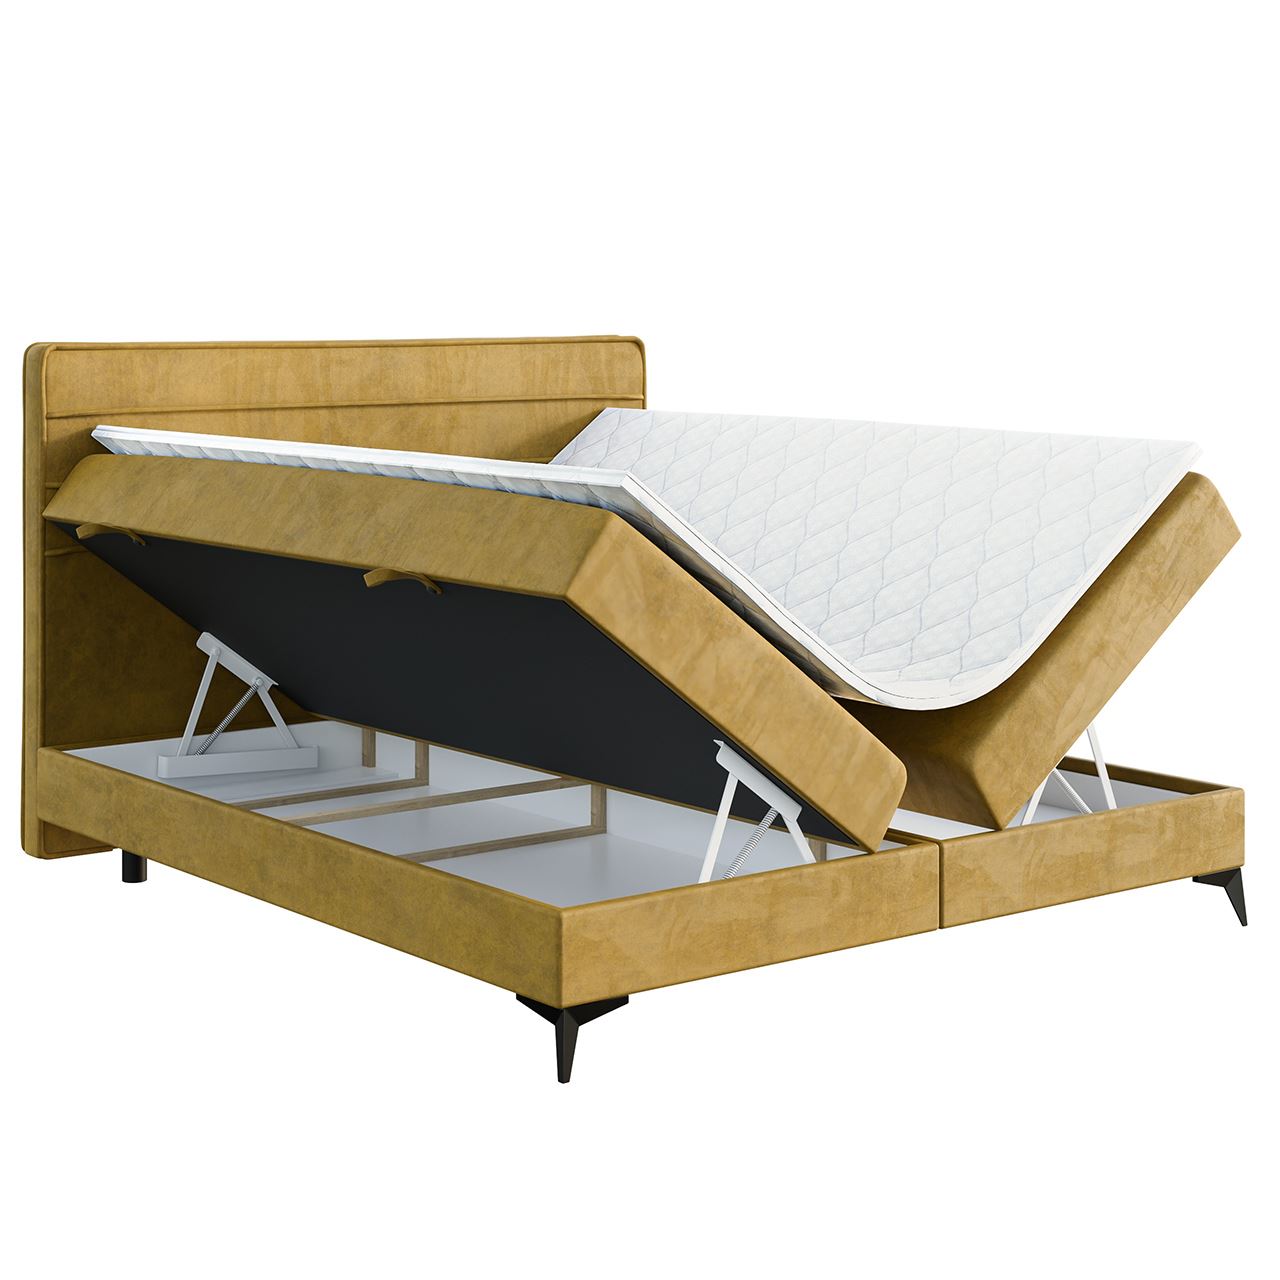 Upholstered bed HORIZON 160x200 magic velvet 2233